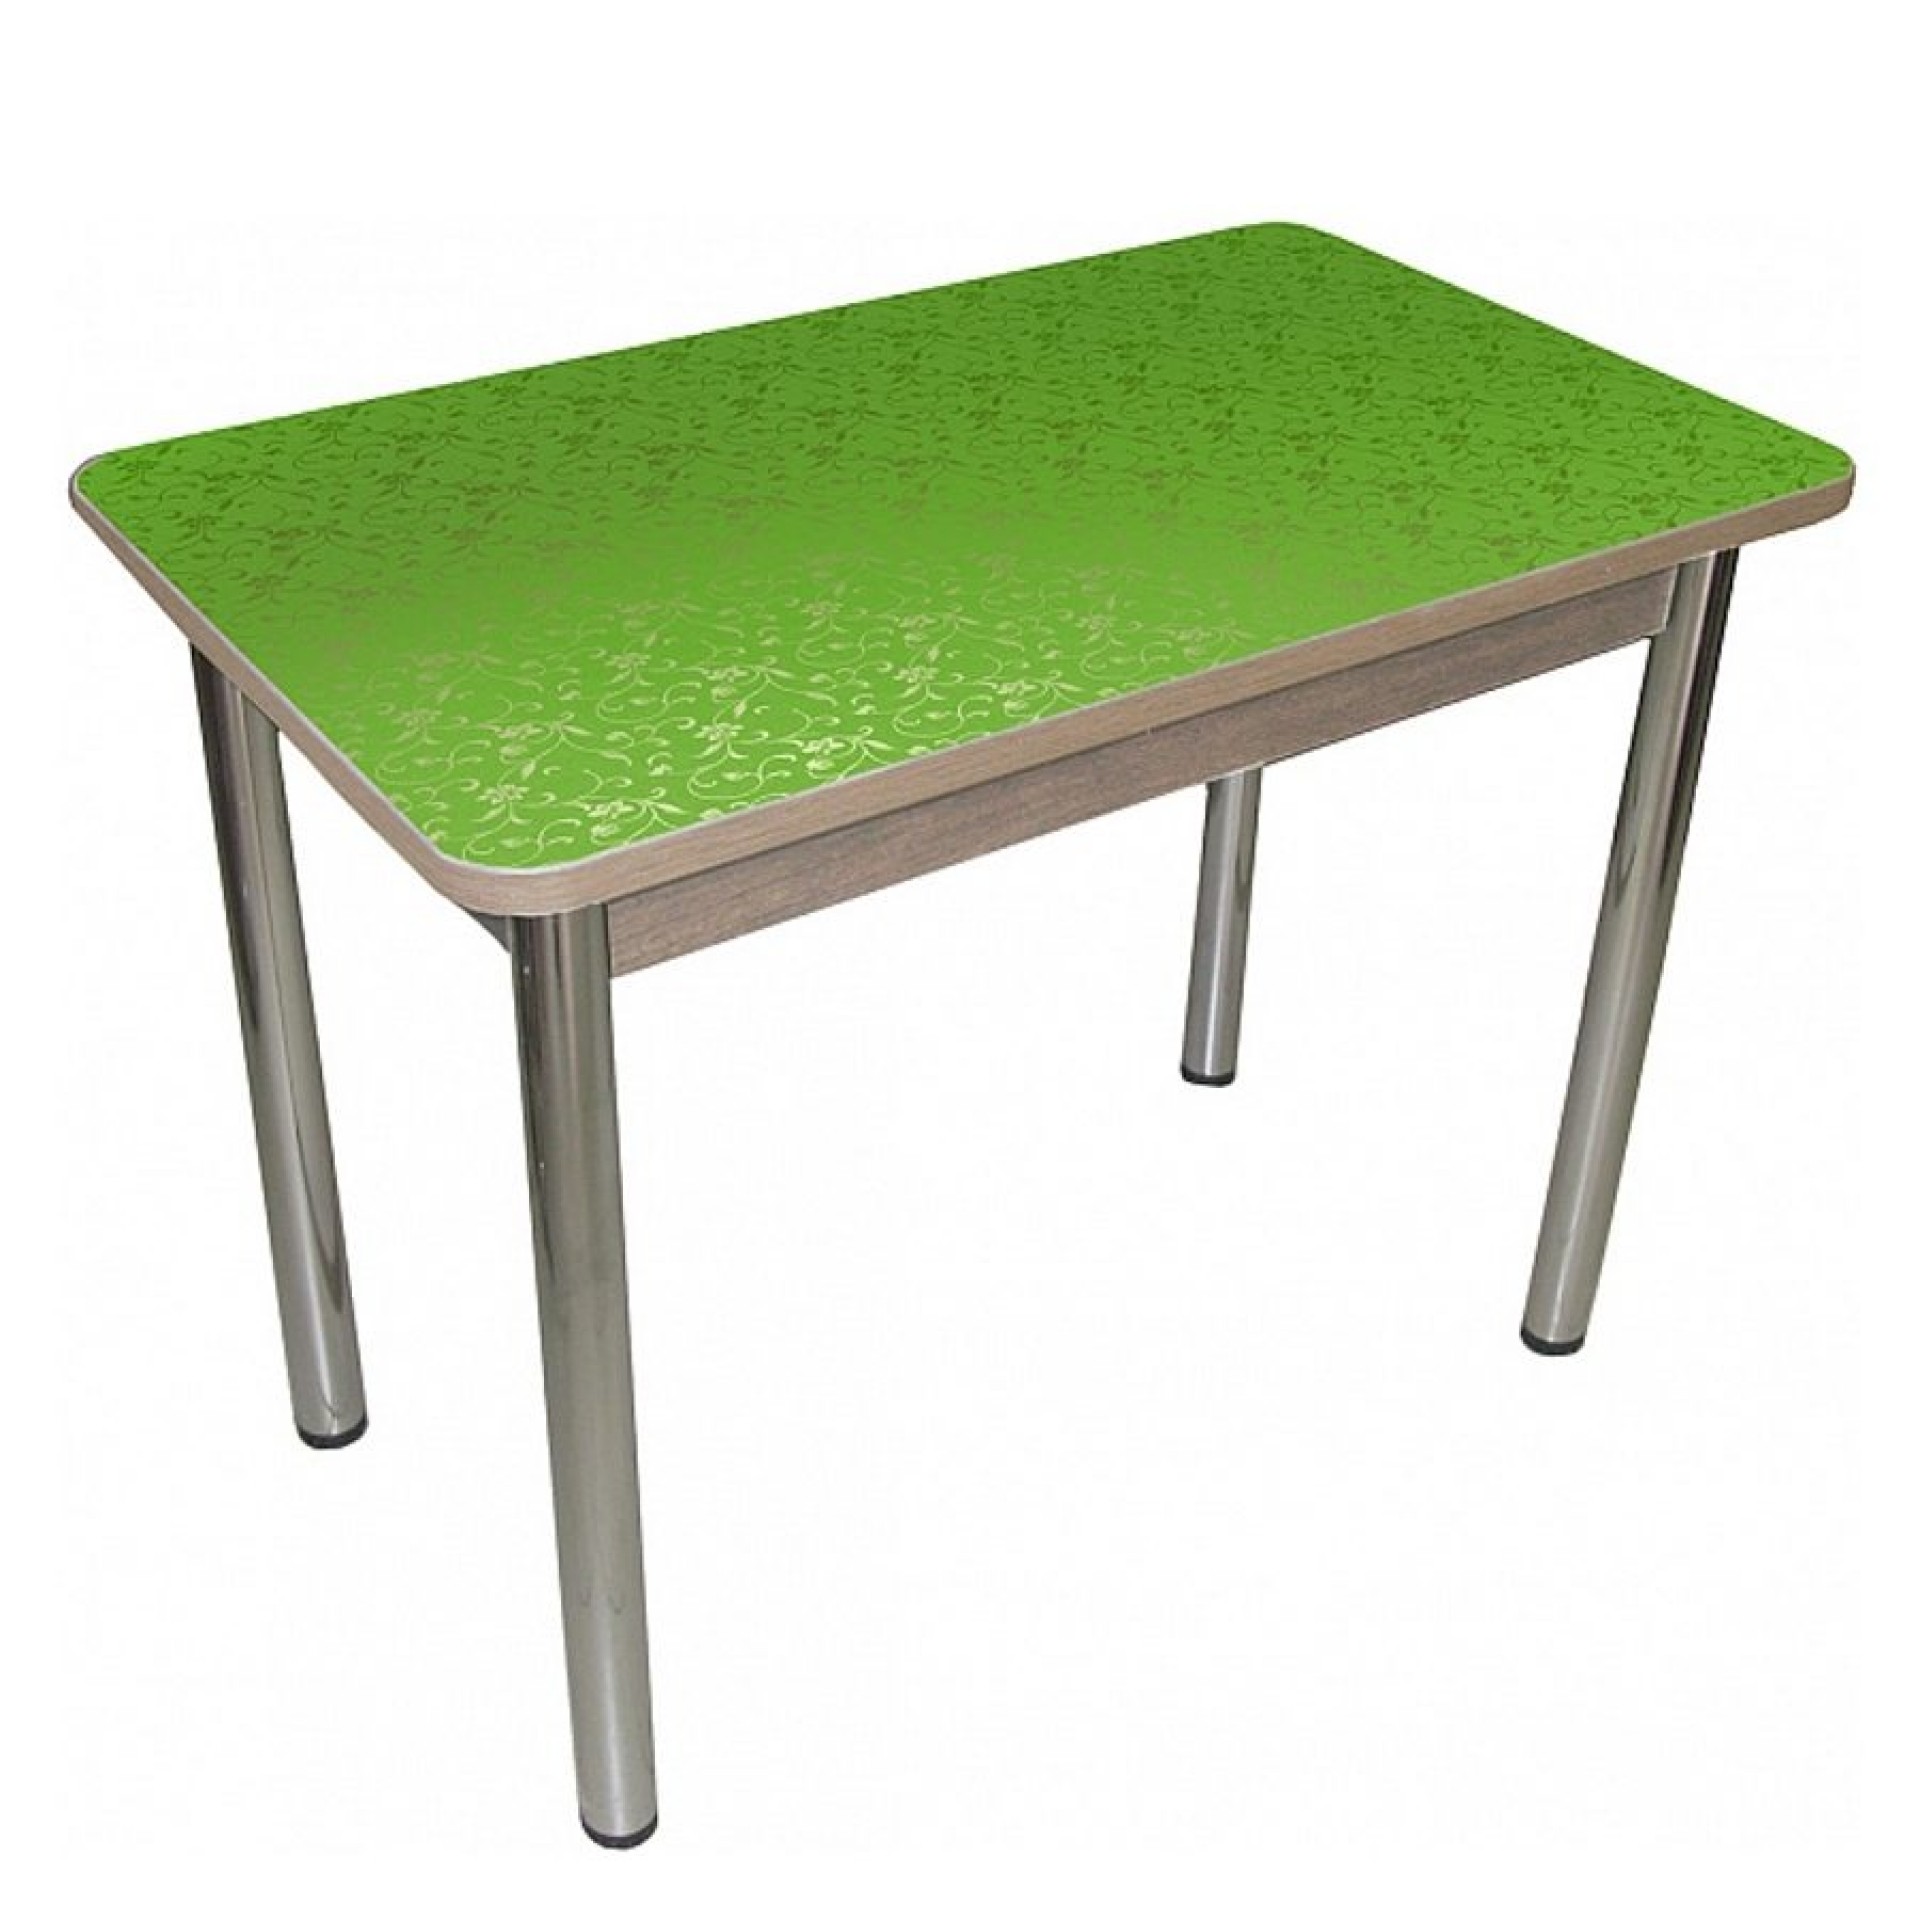 Пластиковый кухонный стол. Стол Милтон 2 Столпром. Стол кухонный. Зеленый стол. Стол дачный.